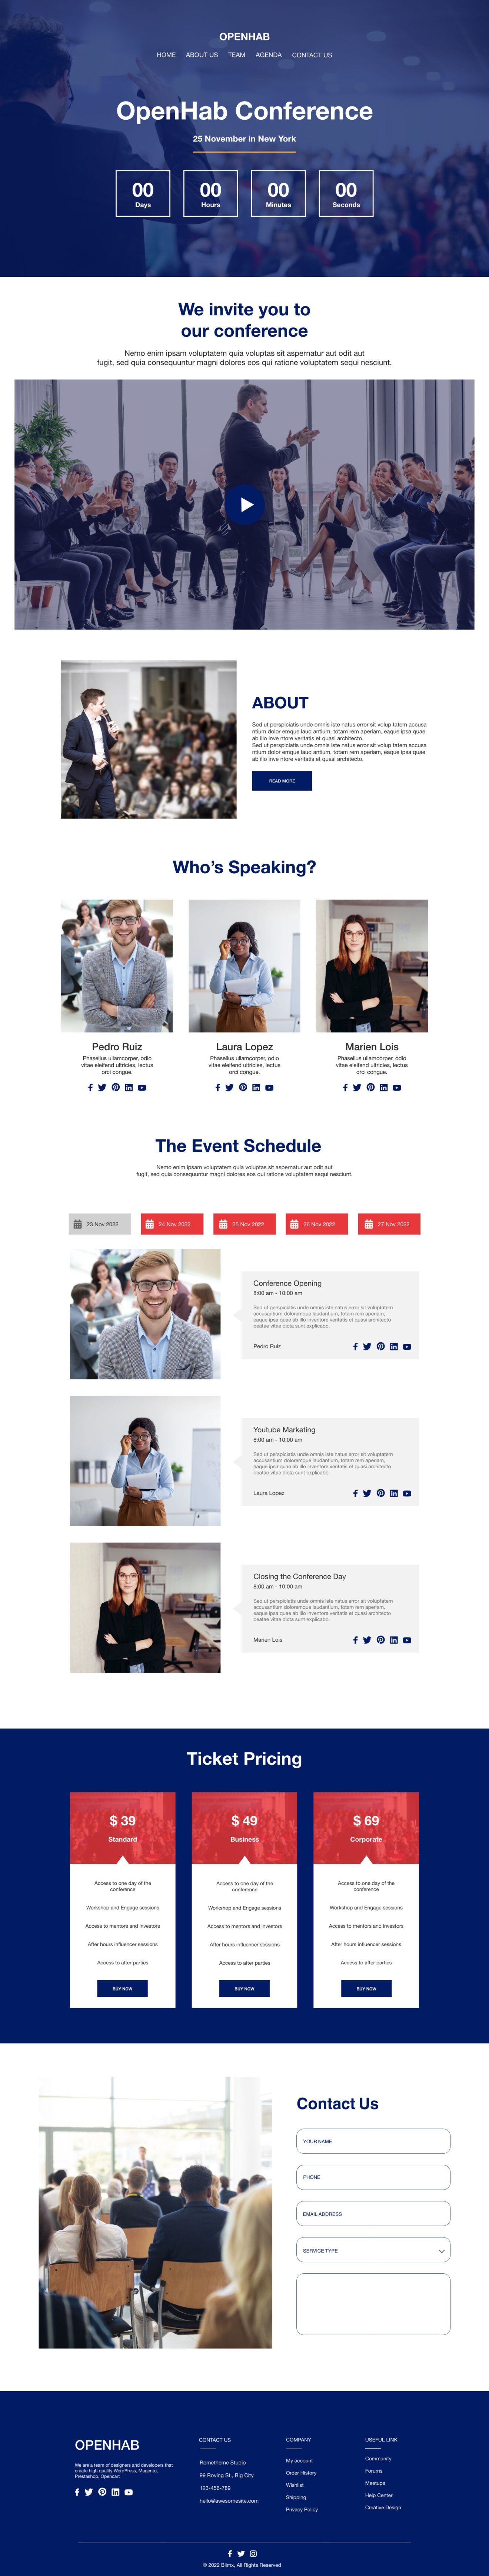 Business Conference Website Design